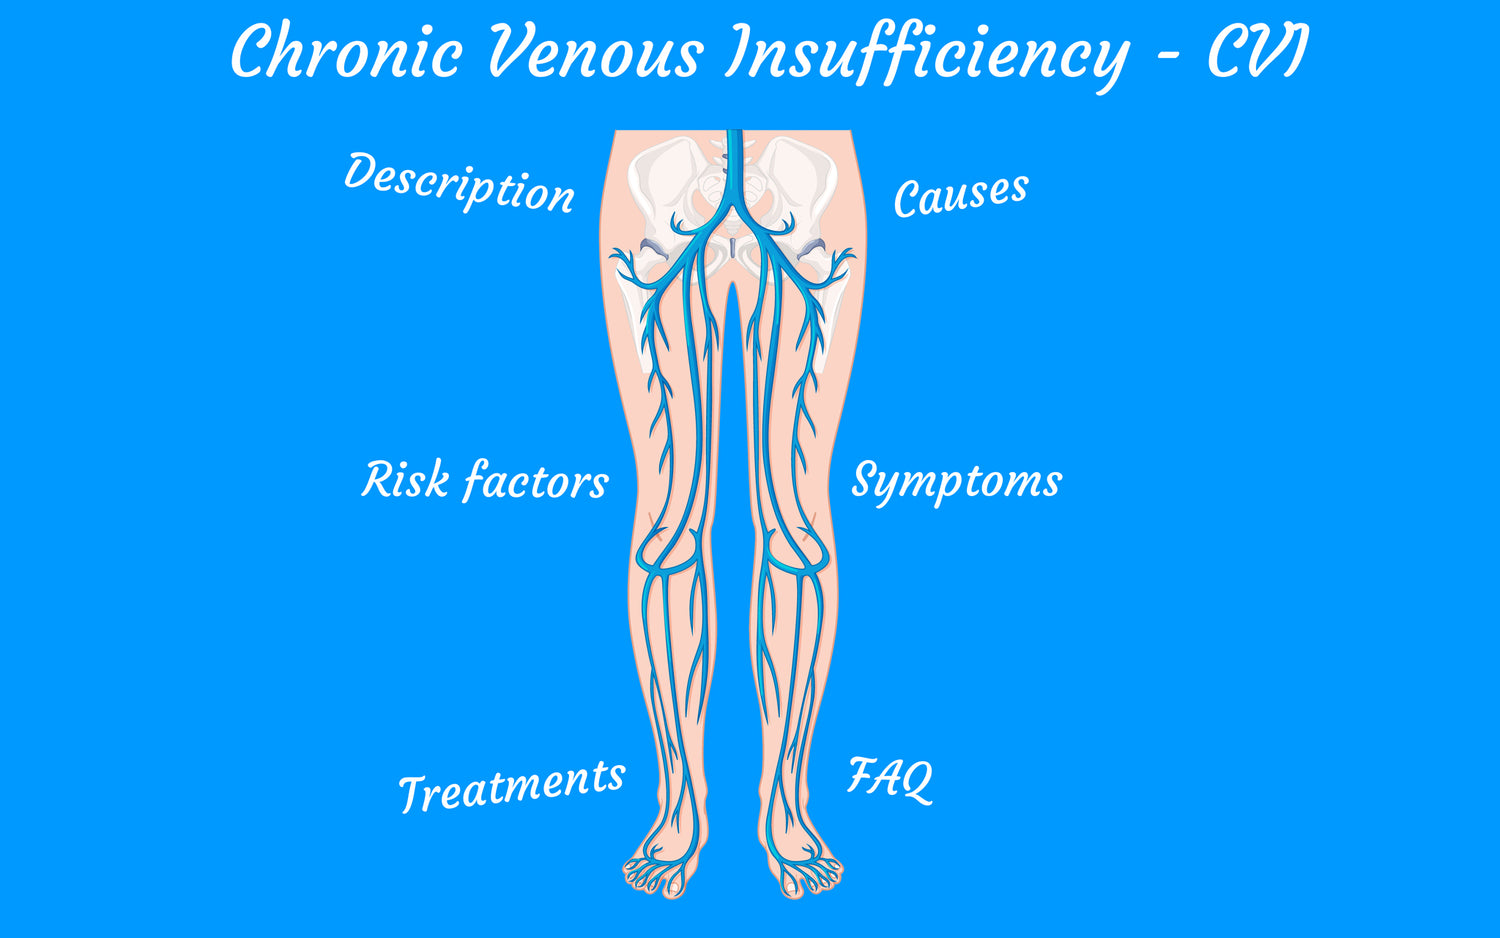 Chronic venous insufficiency (CVI): Symptoms - Causes - Treatments